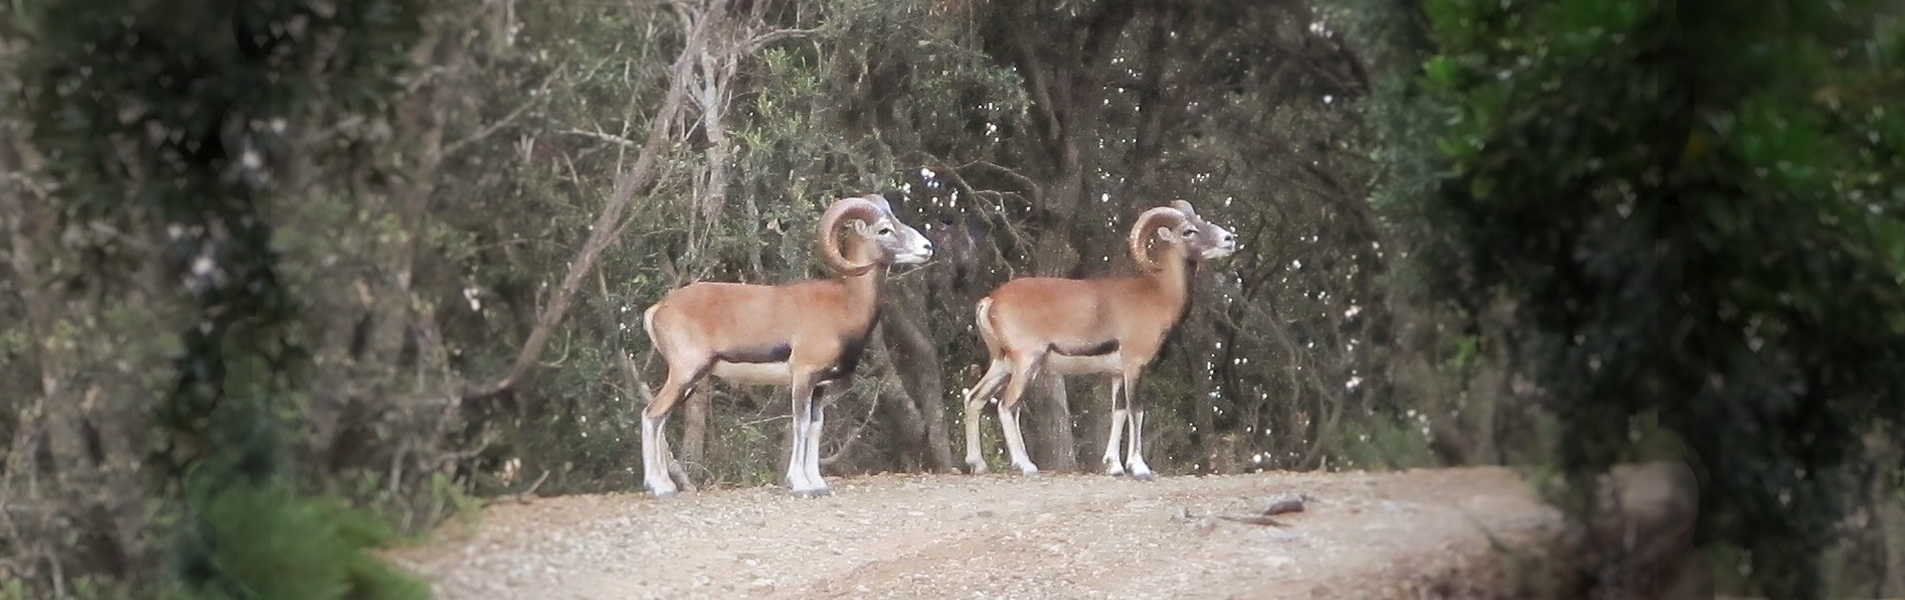 Mouflon of Giglio Island